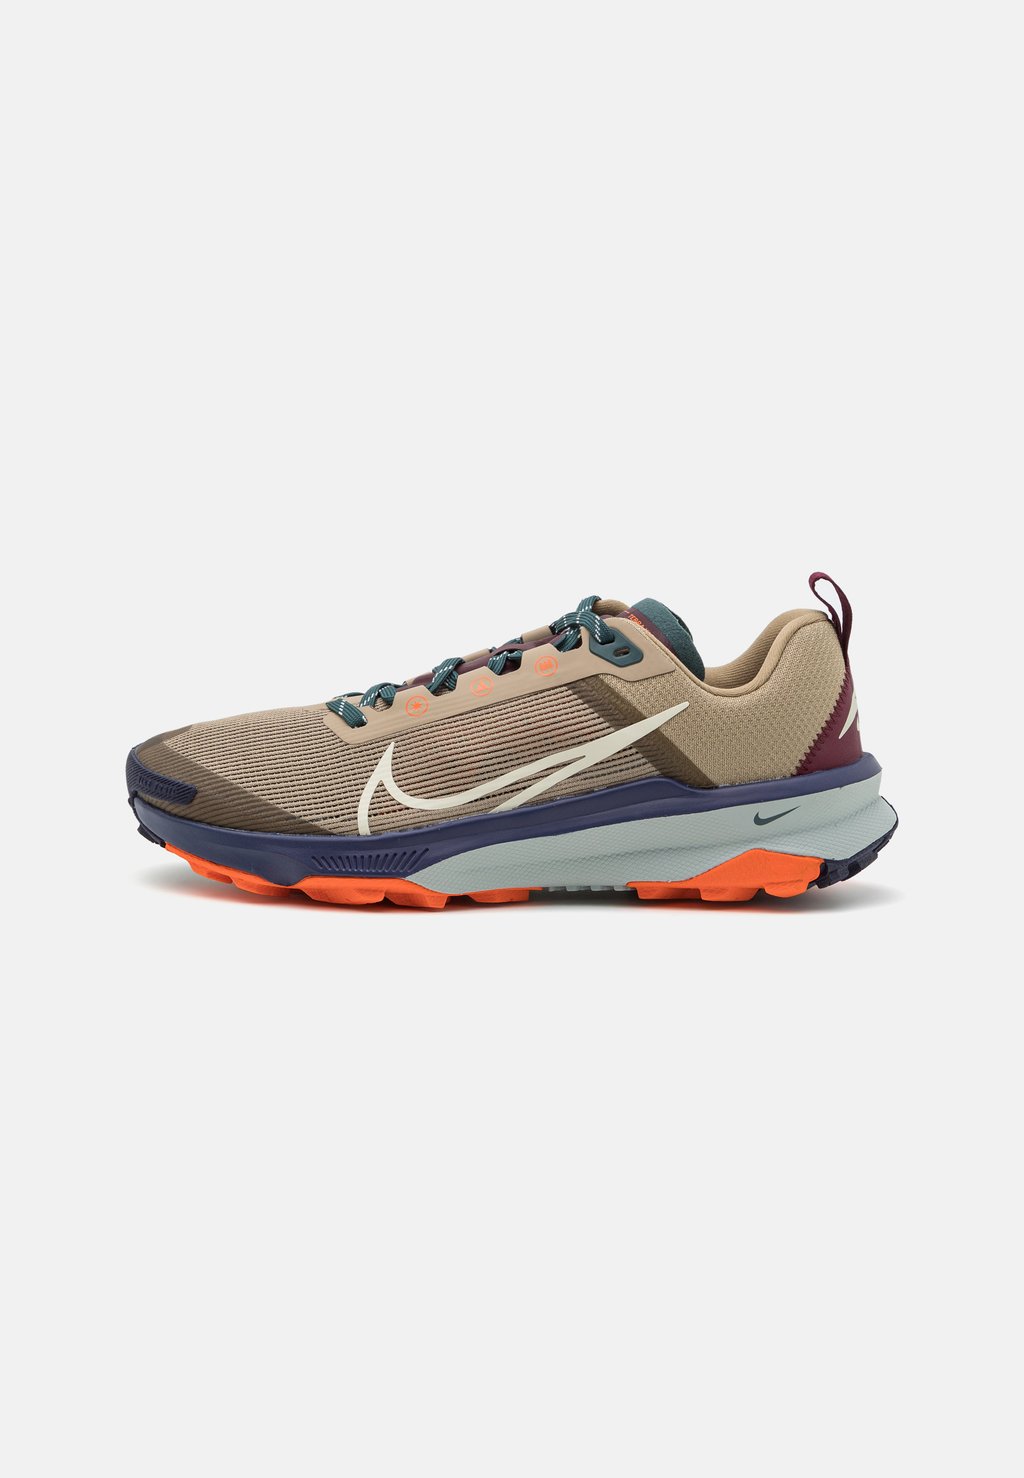 Кроссовки для бега по пересеченной местности REACT TERRA KIGER 9 , цвет khaki/sea glass/deep jungle/safety orange/purple ink Nike